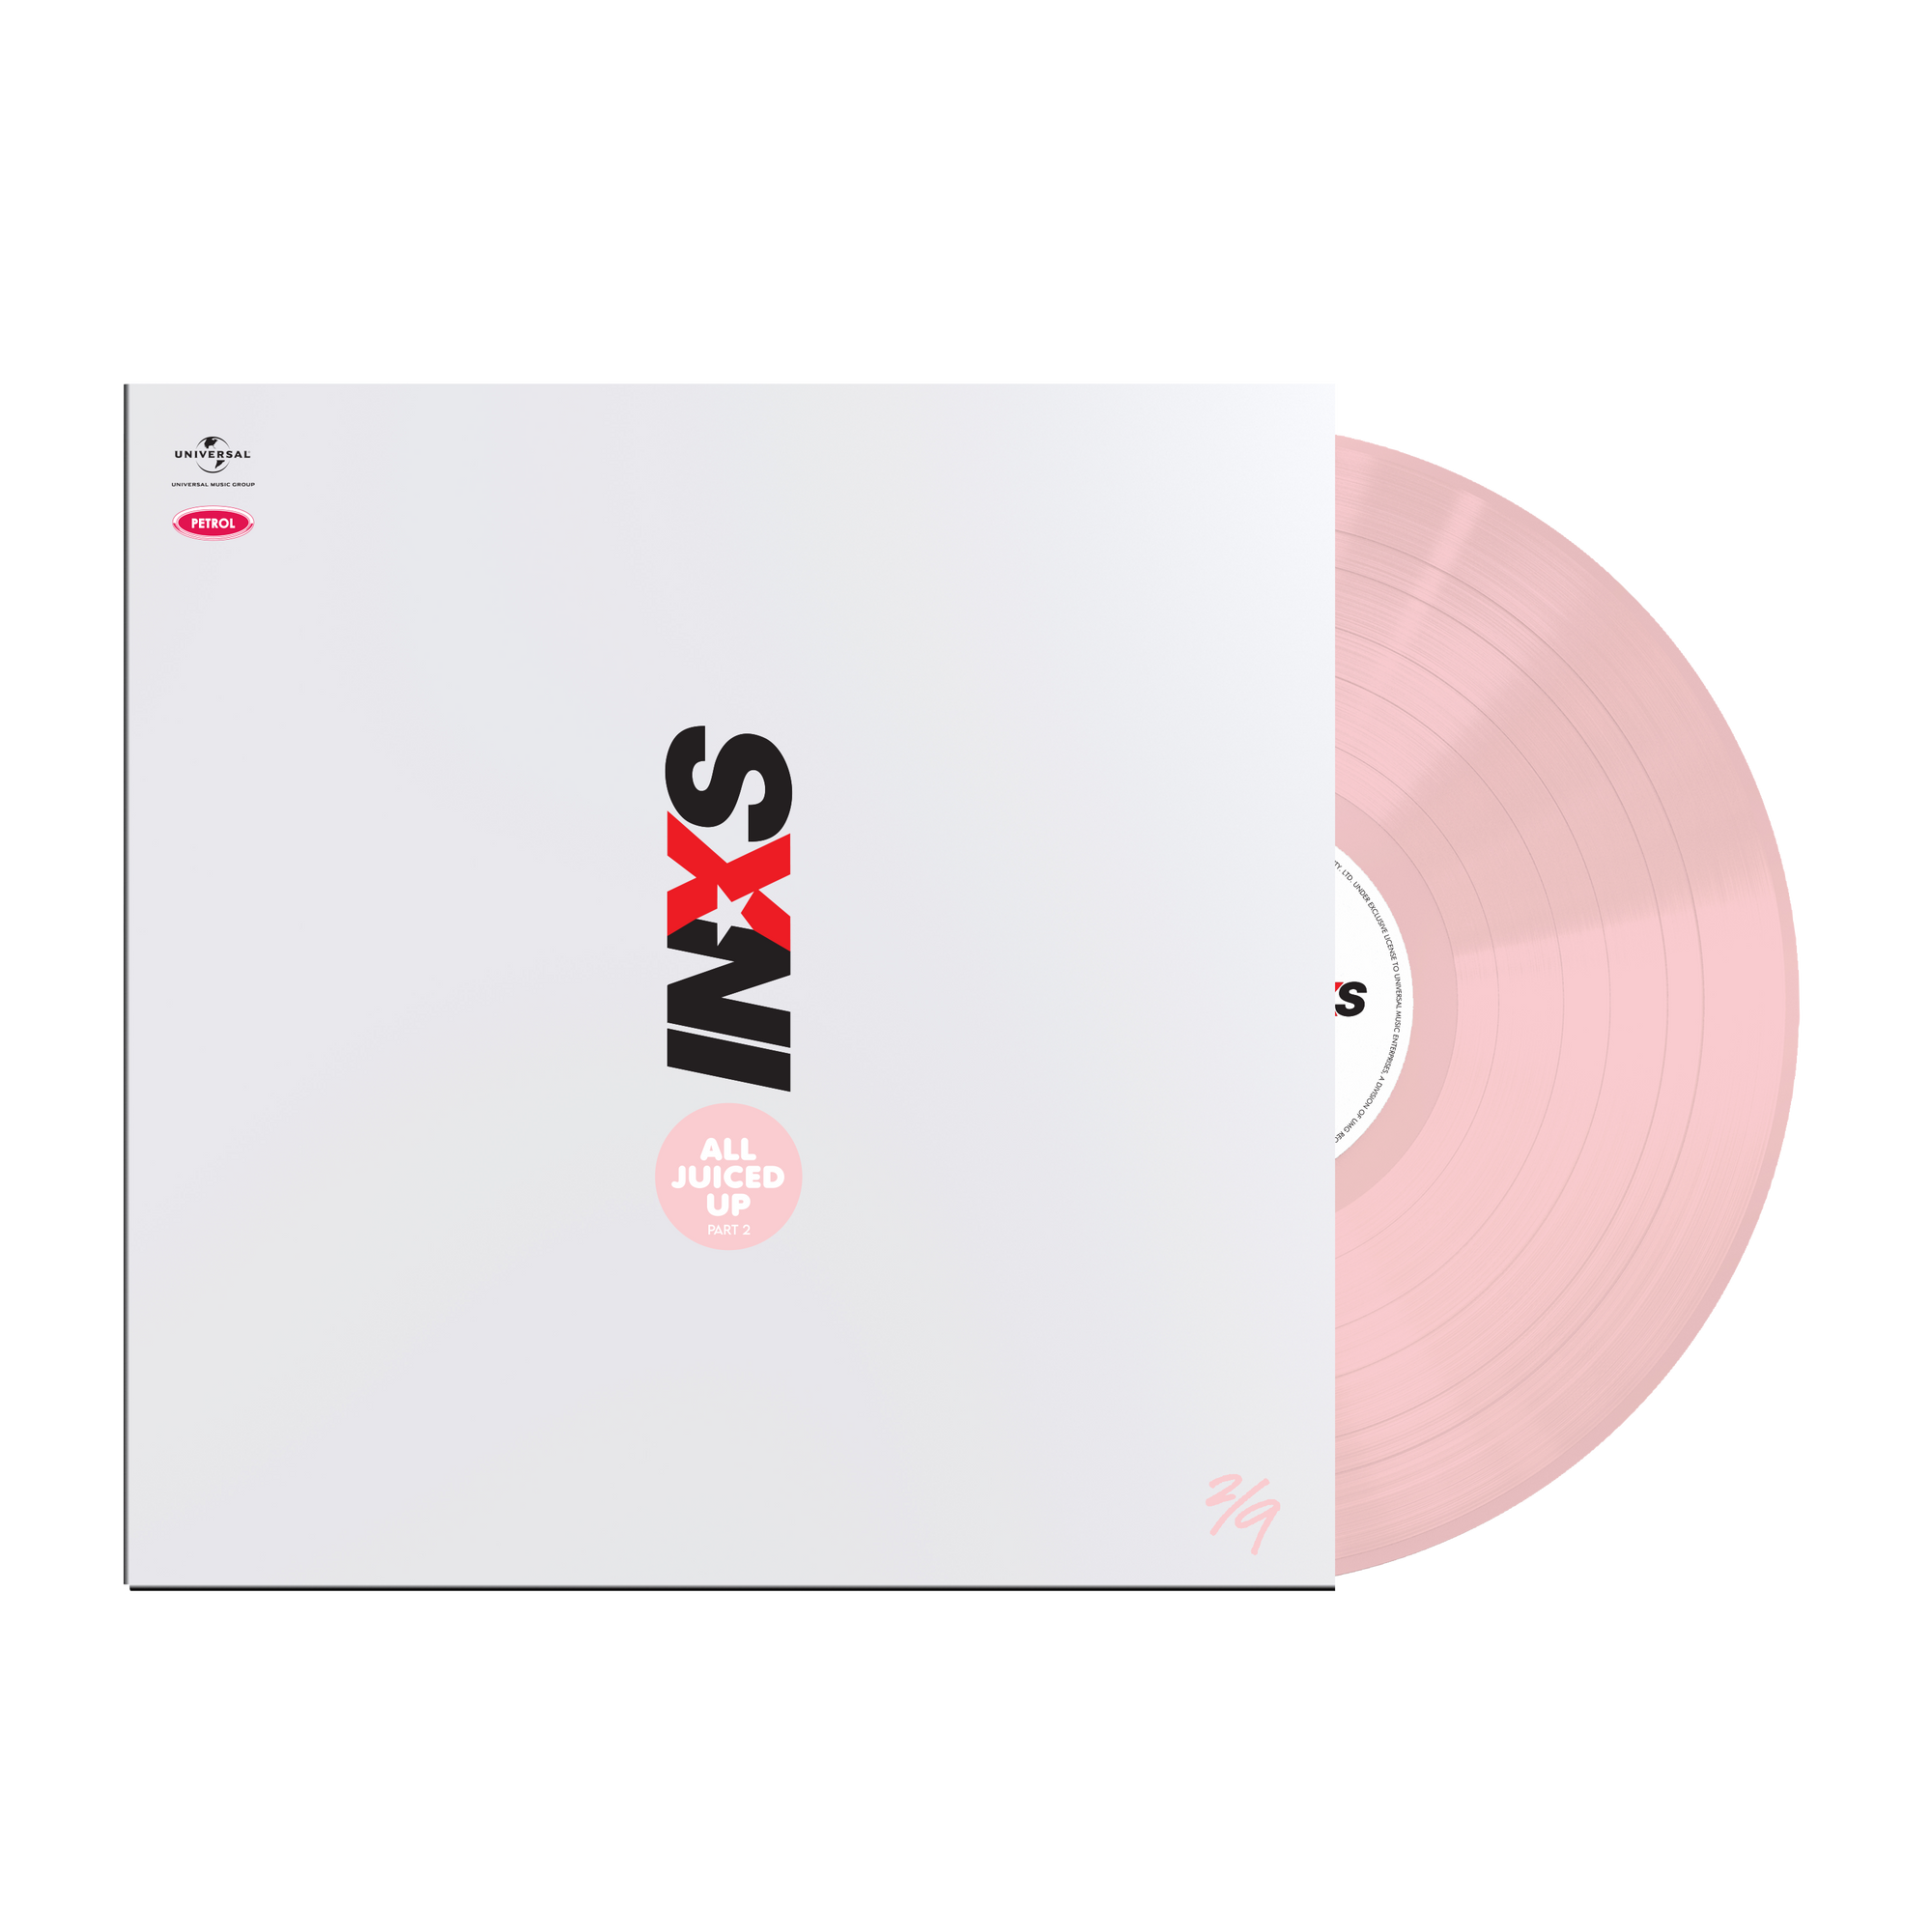 Inxs All Juiced Up Part 2 Vol 2 Exclusive Pink Vinyl Lp Sound Of Vinyl